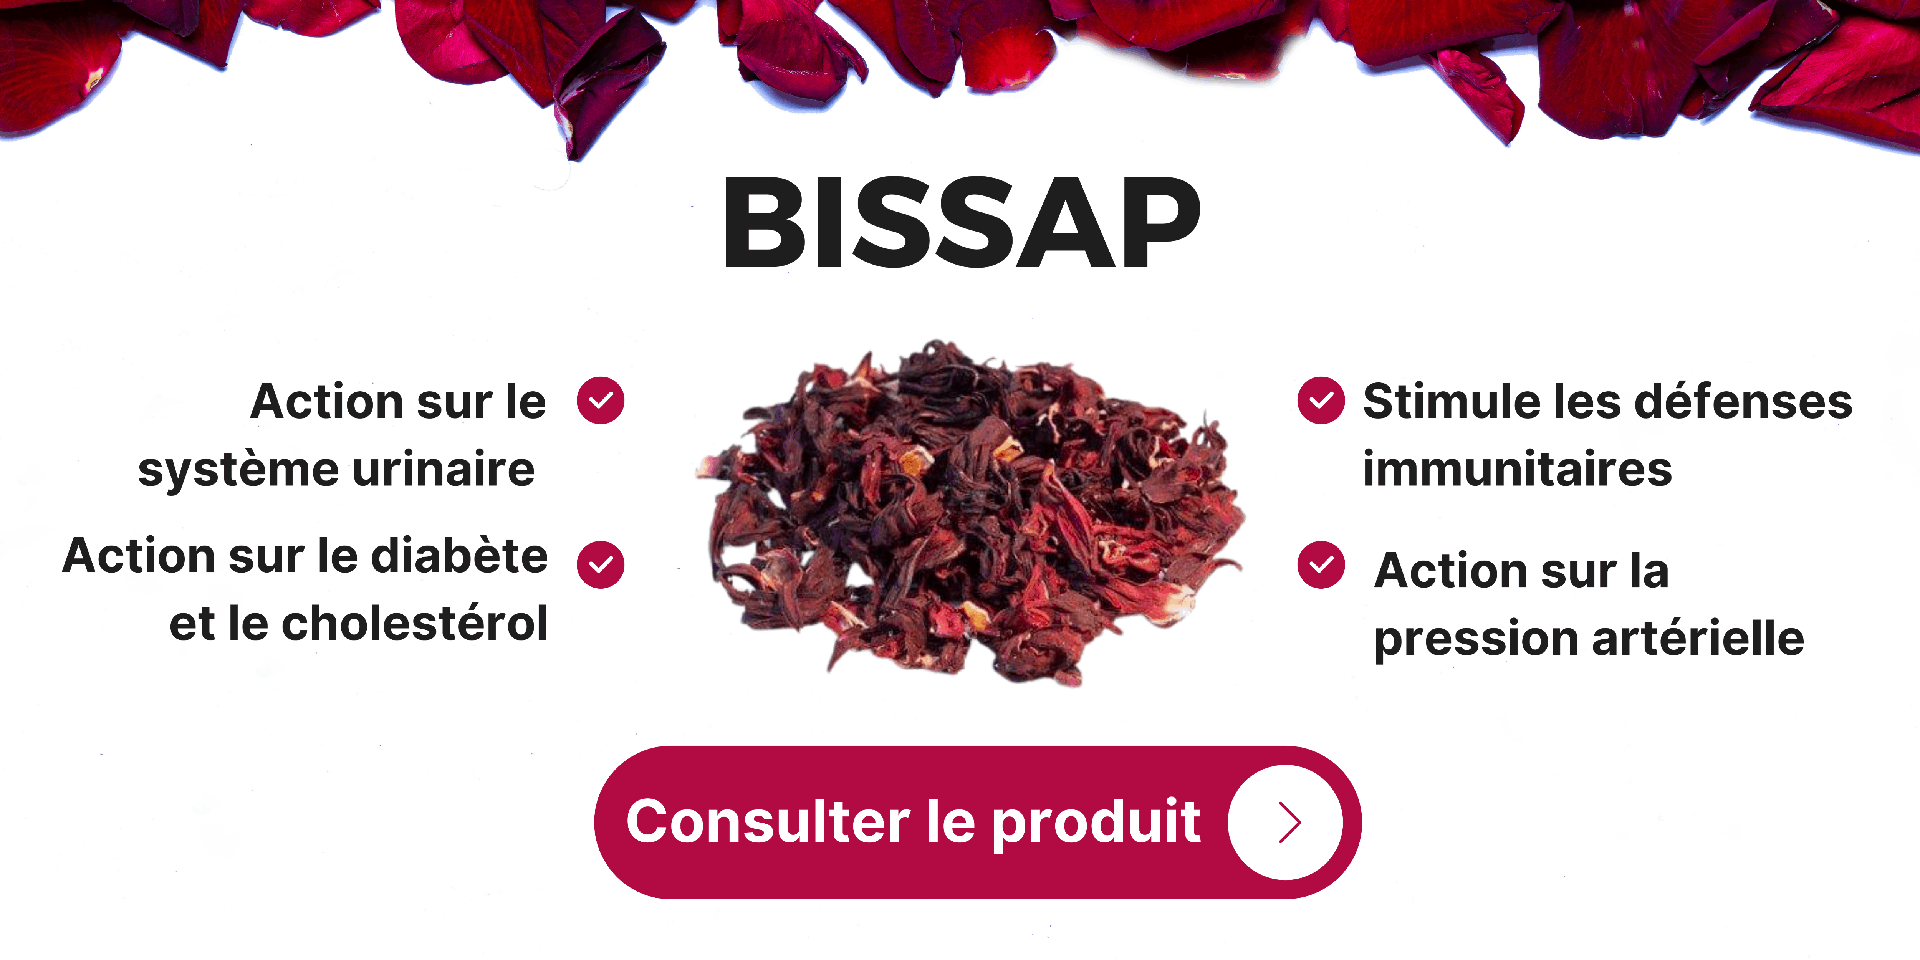 Le bissap bienfaits en cosmétique, en cuisine et médecine traditionnelle